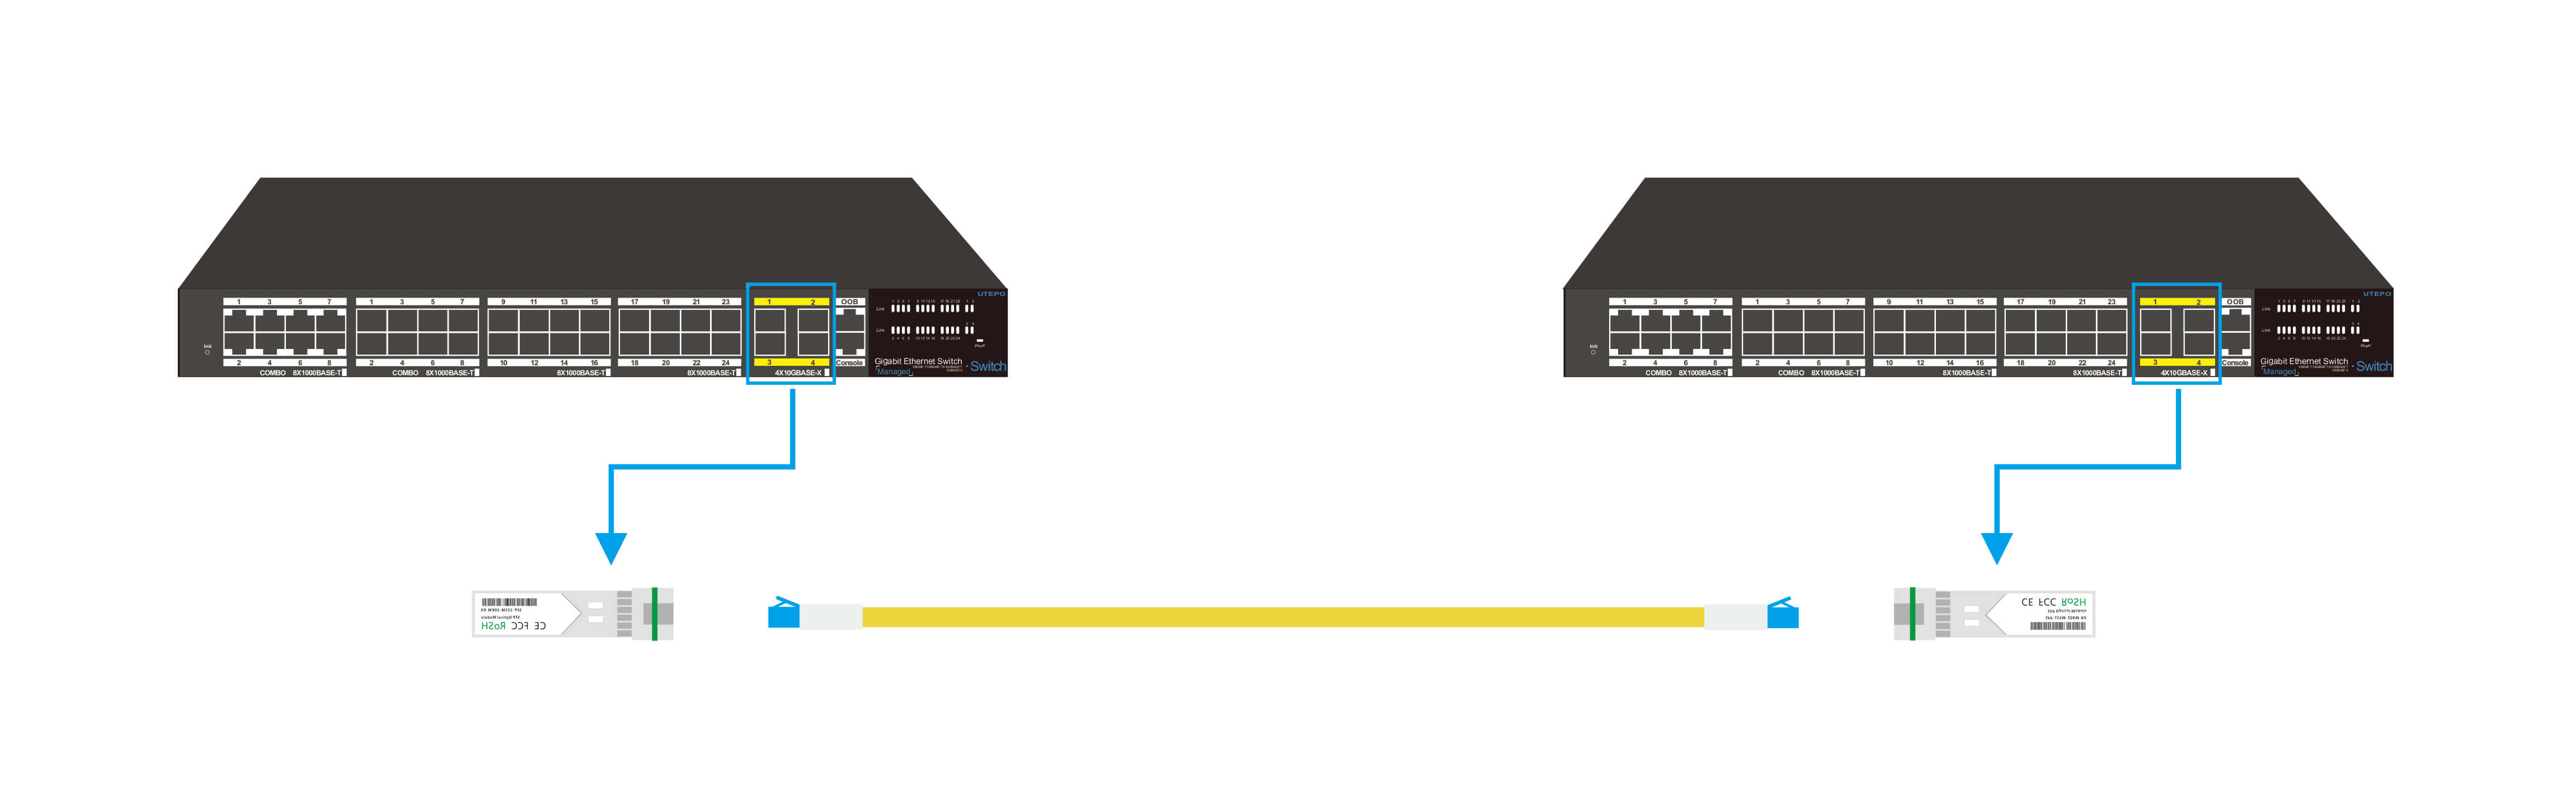 bidi sfp 万兆单纤双向光模块与交换机之间的连接